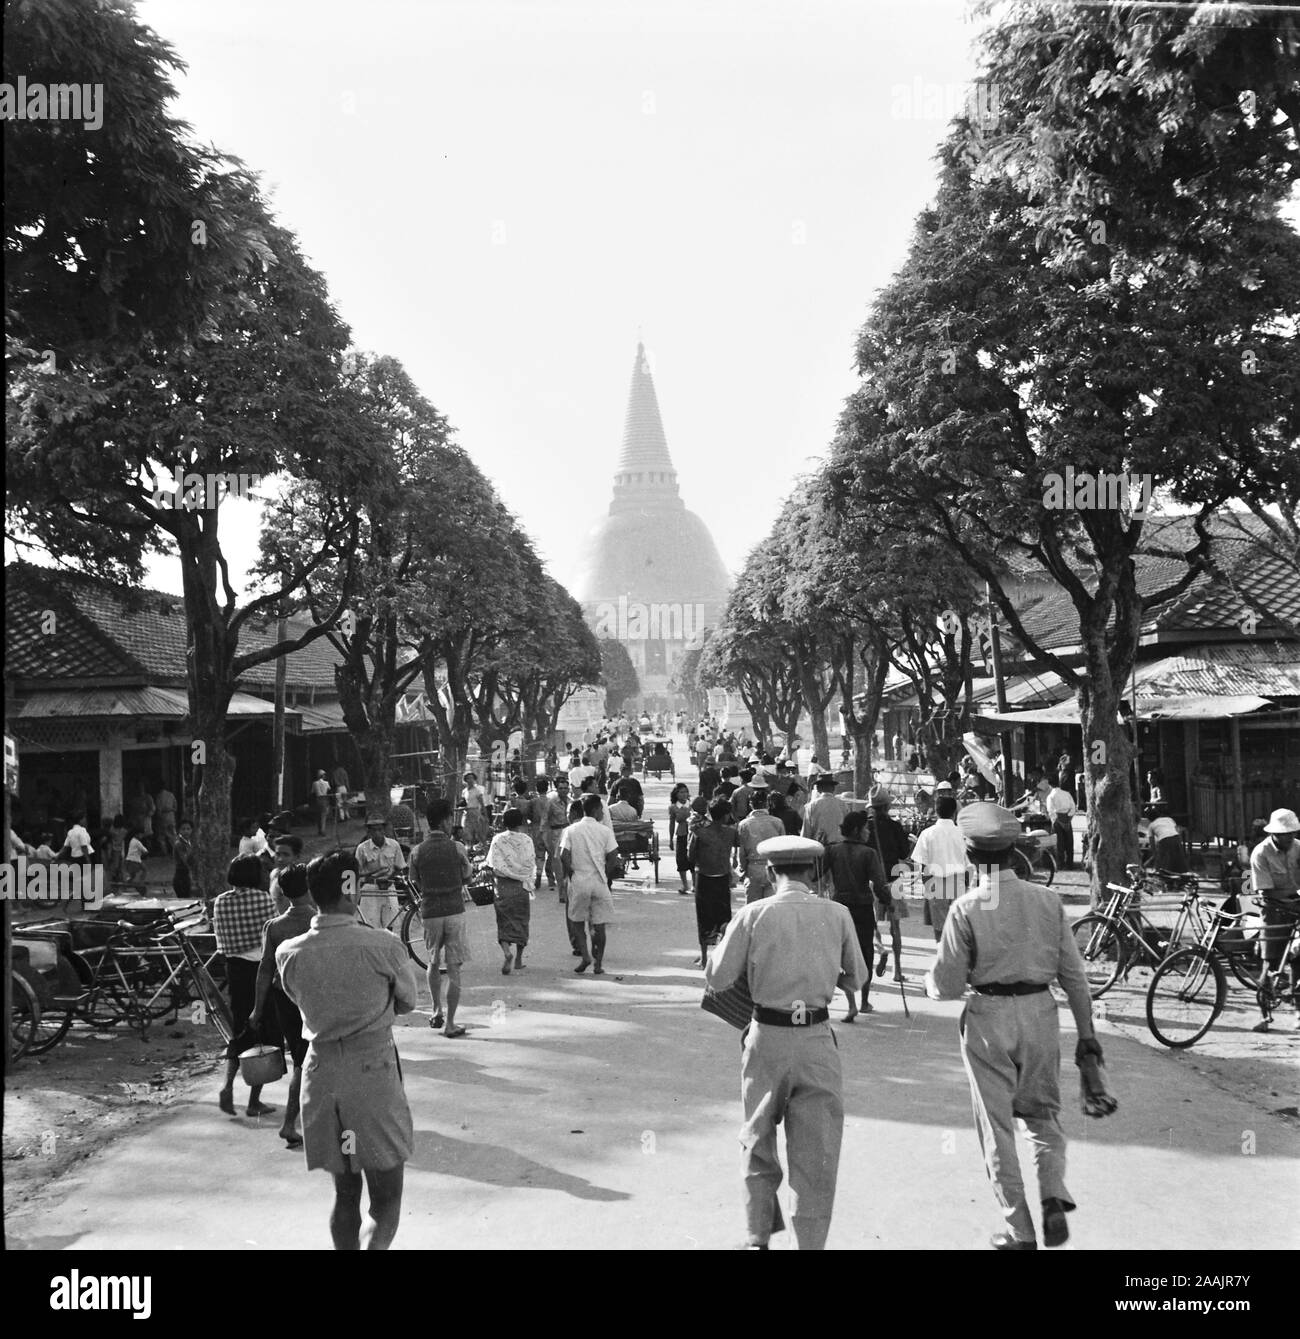 Vieilles photos montrant l'être des individus dans la province de Nakhon Pathom, Thaïlande, au Temple Phra Pathom Chedi. Cet ensemble d'images a été prise le 2 janvier 1948. Banque D'Images